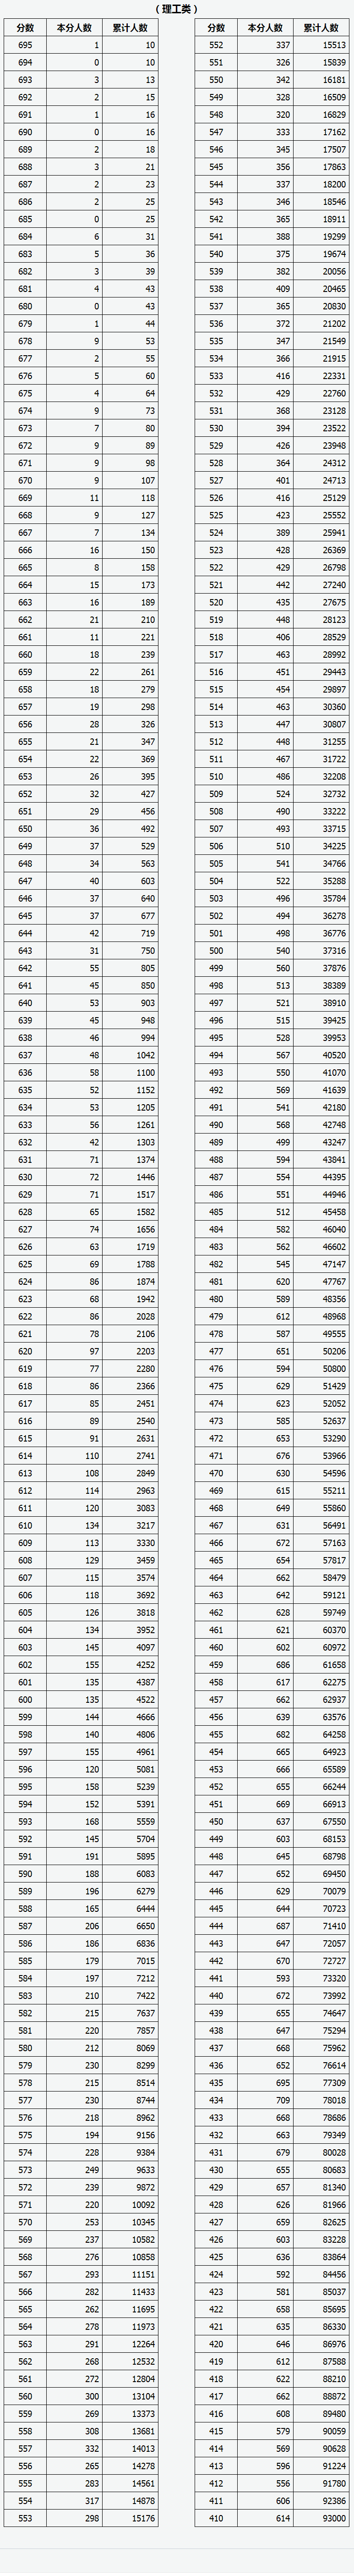 山西省普通高考成绩理科一分一段统计表排列